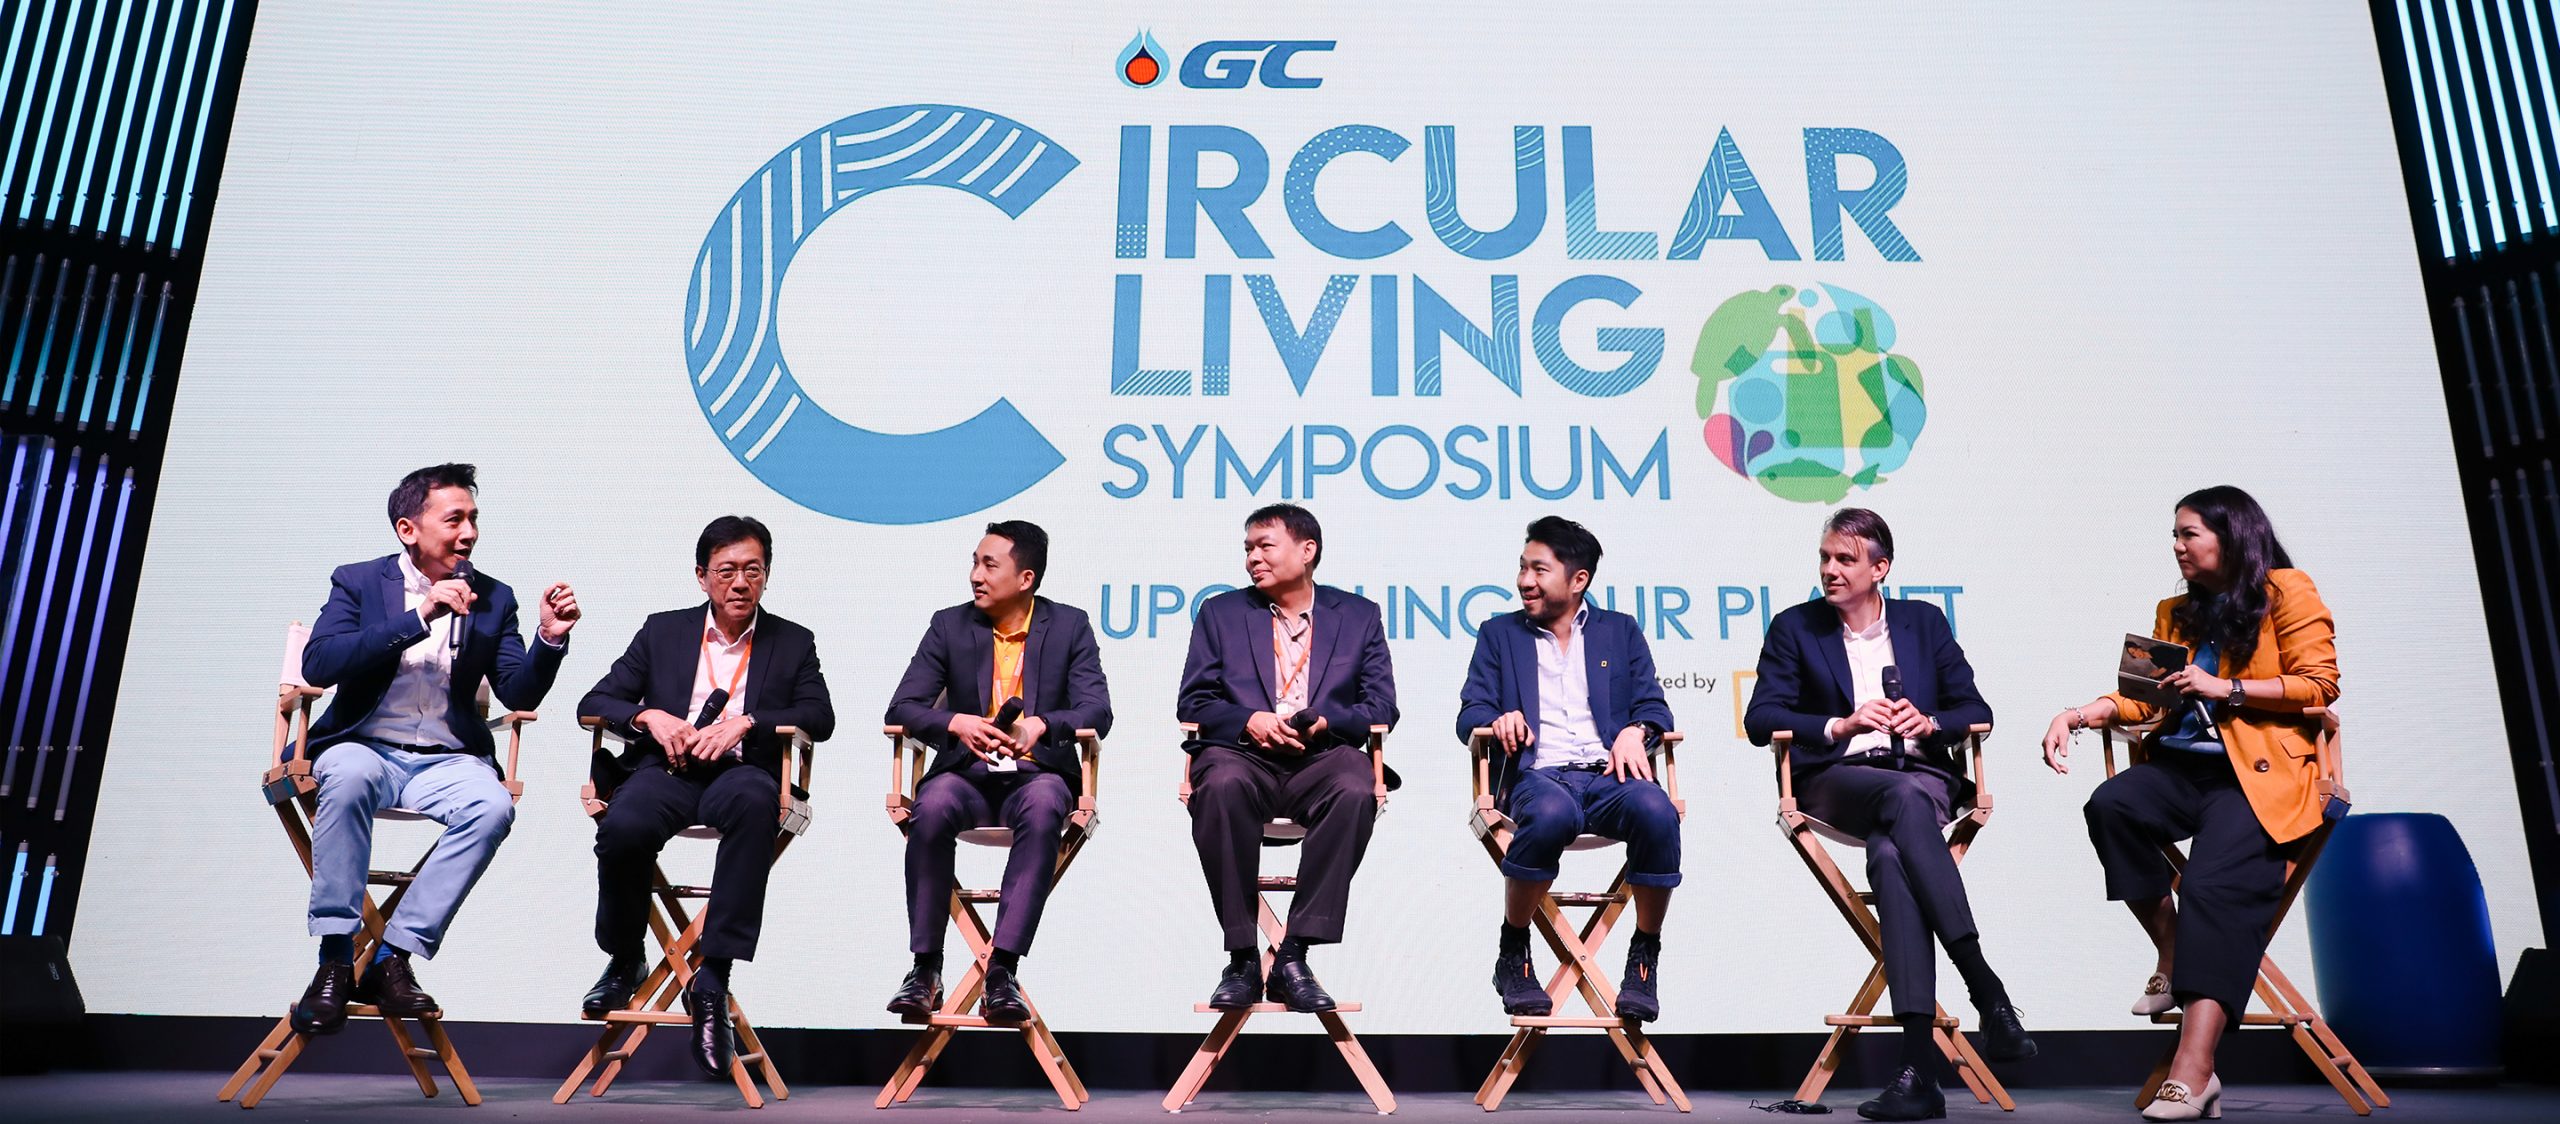 Circular Living Symposium 2019 งานสัมมนาปฏิวัติการใช้ทรัพยากรที่ปลุกพลังว่า Circular Living สามารถทำได้จริงและยั่งยืน